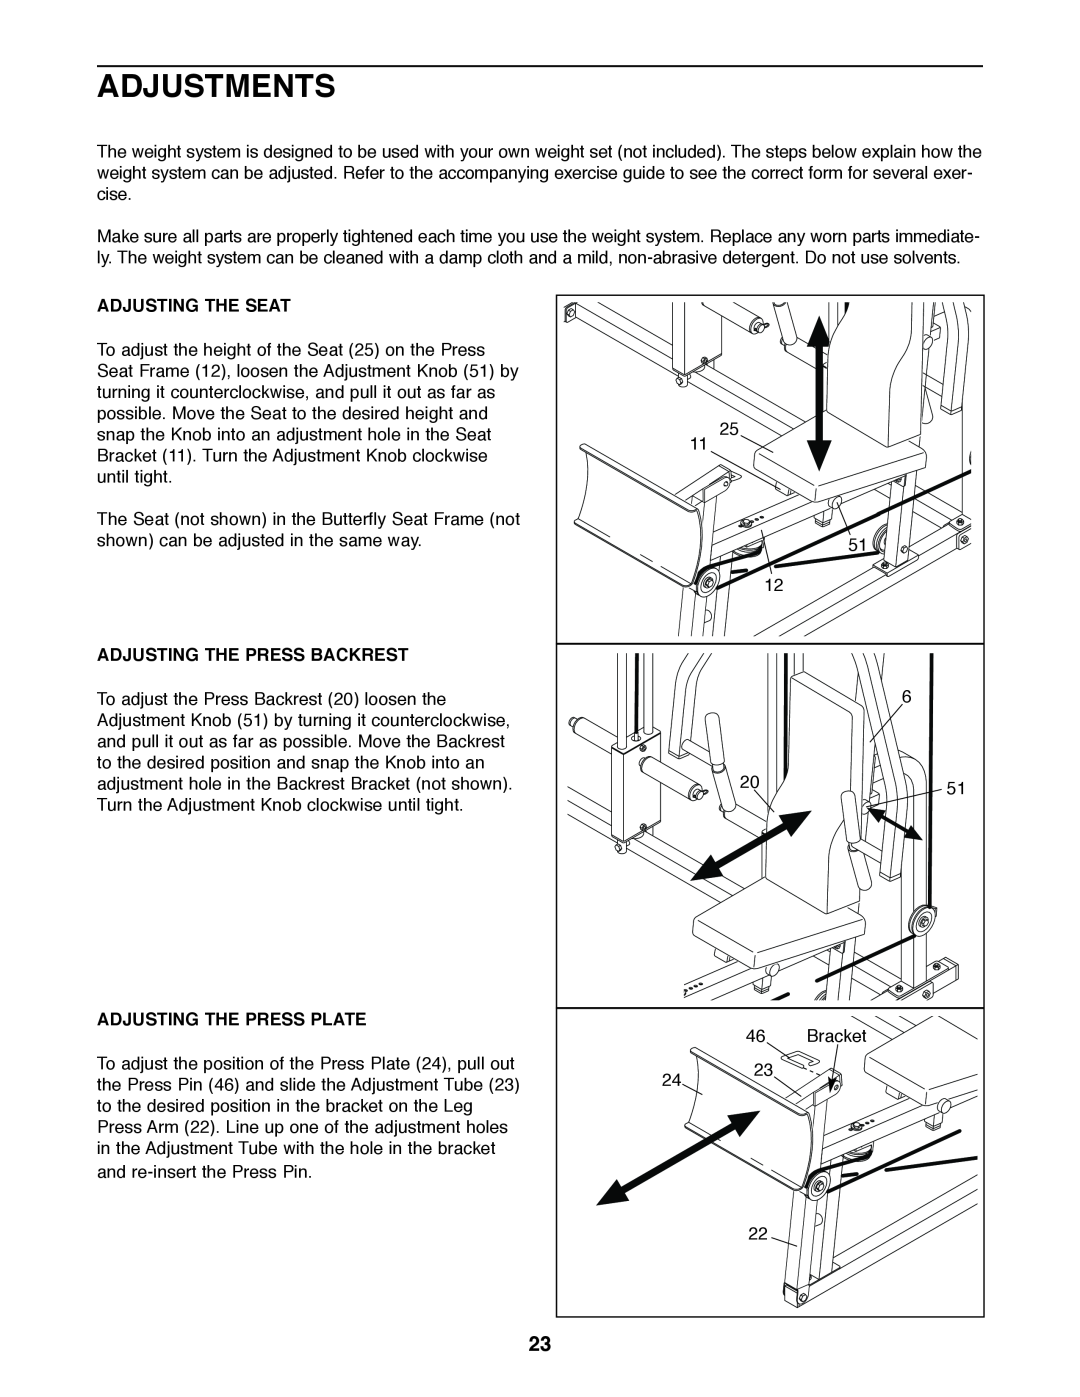 Weider 831.159530 user manual Adjustments, Adjusting The Seat, Adjusting The Press Backrest, Adjusting The Press Plate 